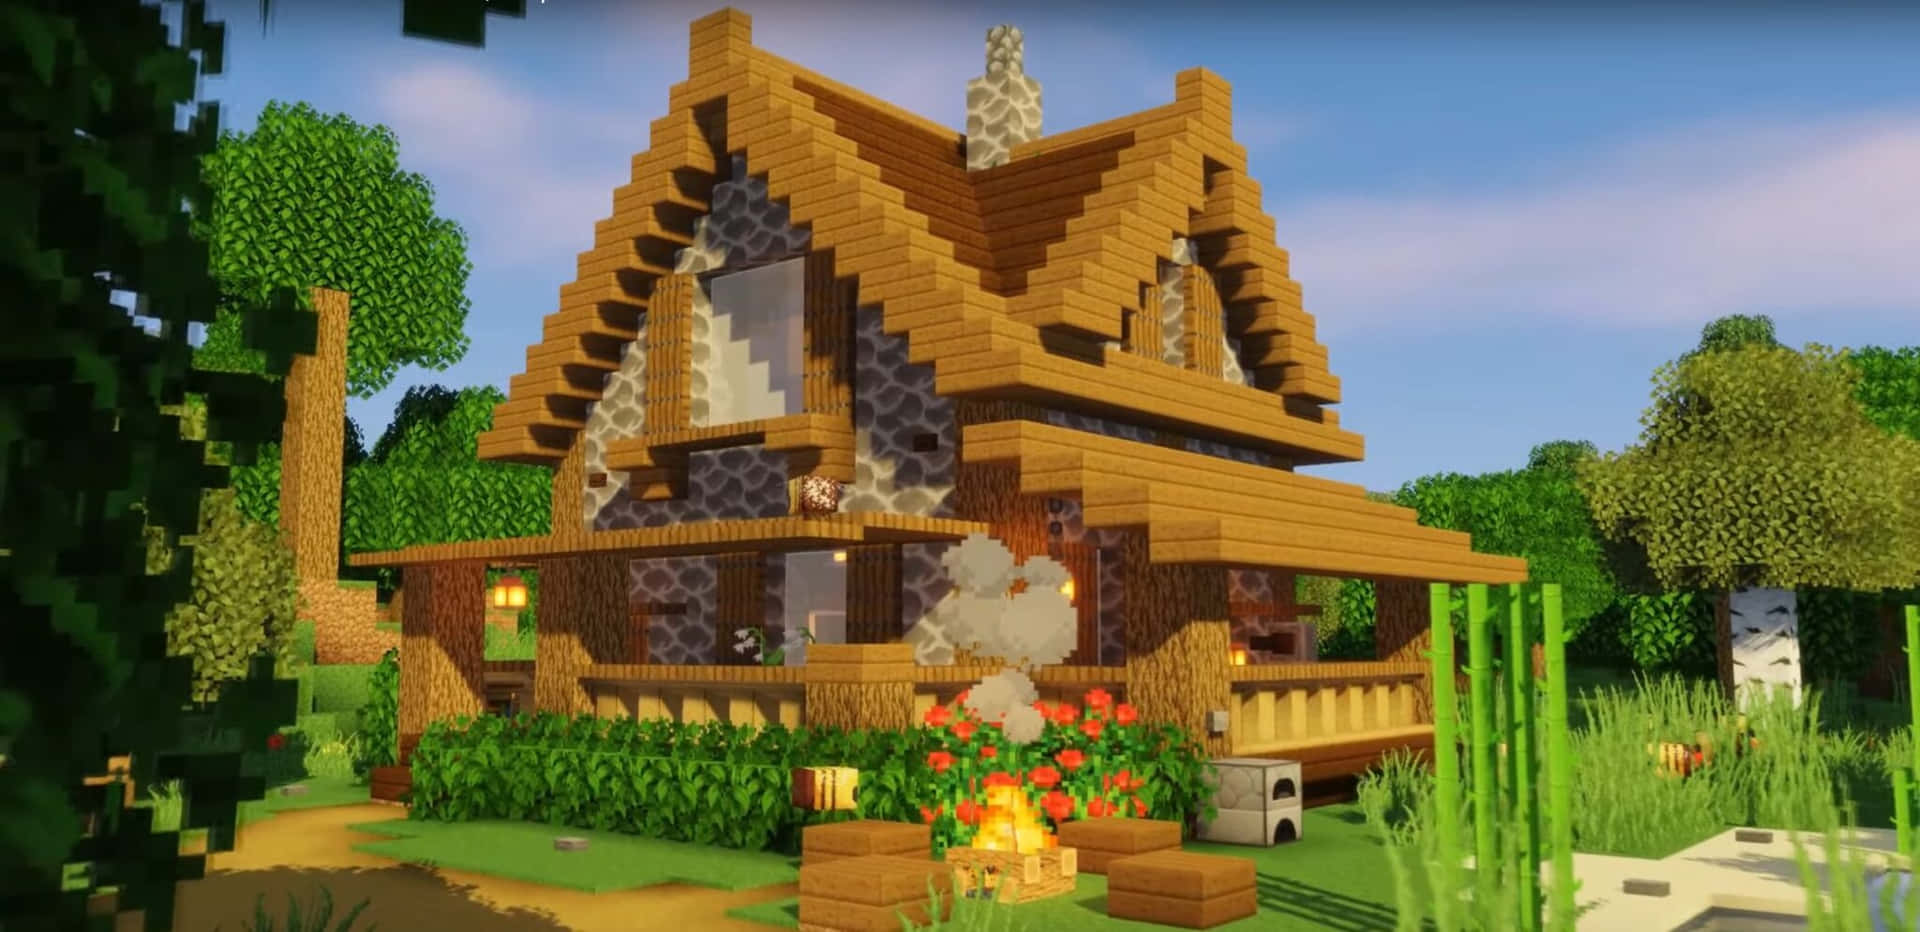 Einspektakulärer Blick Auf Ein Dorf Mit Traditionellen Minecraft-häusern.